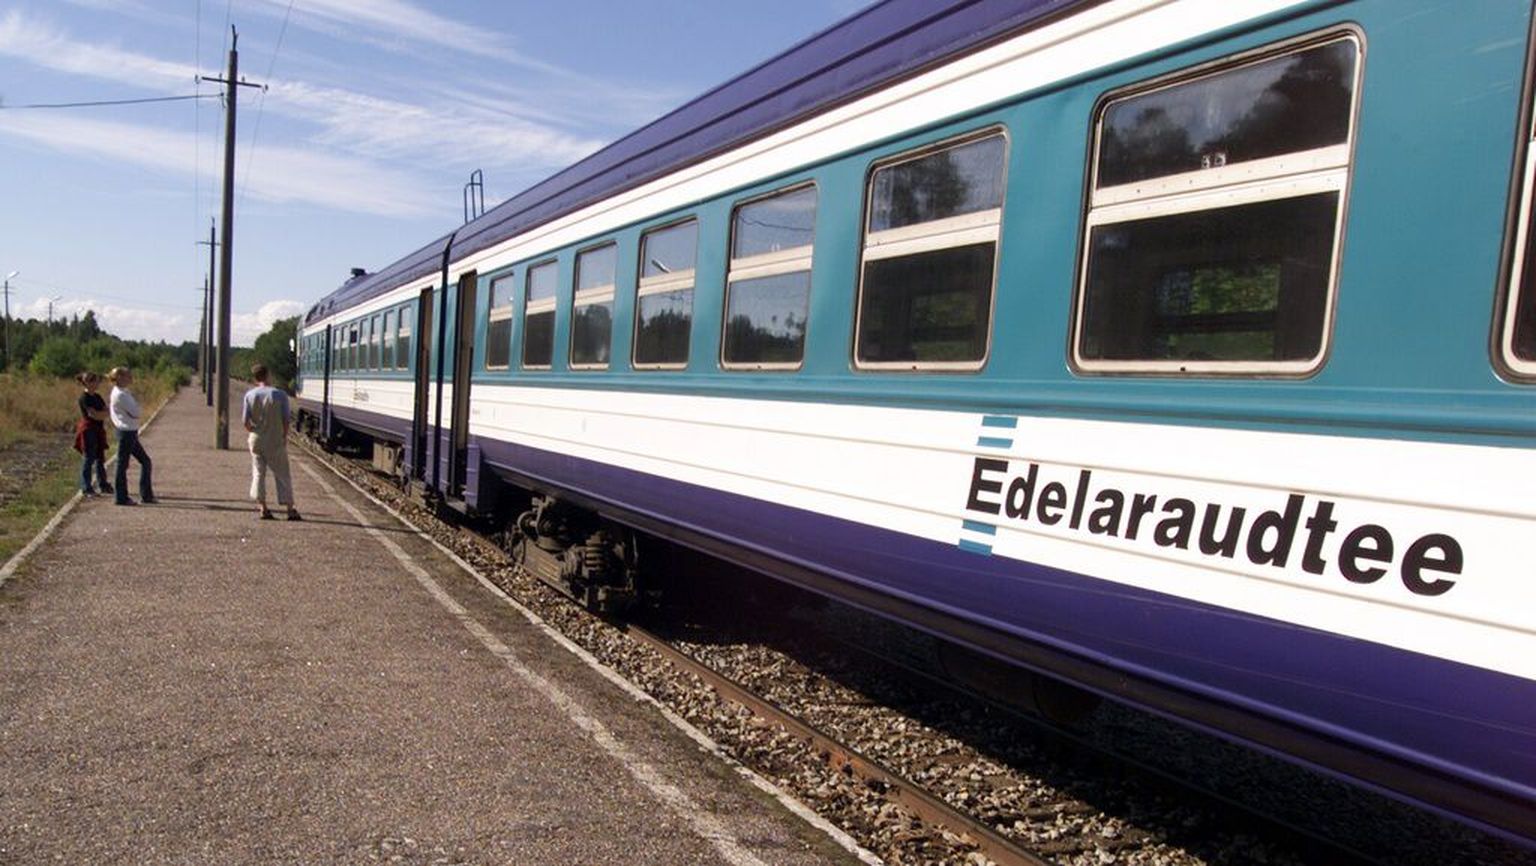 Поезд Edelaraudtee. Снимок иллюстративный.